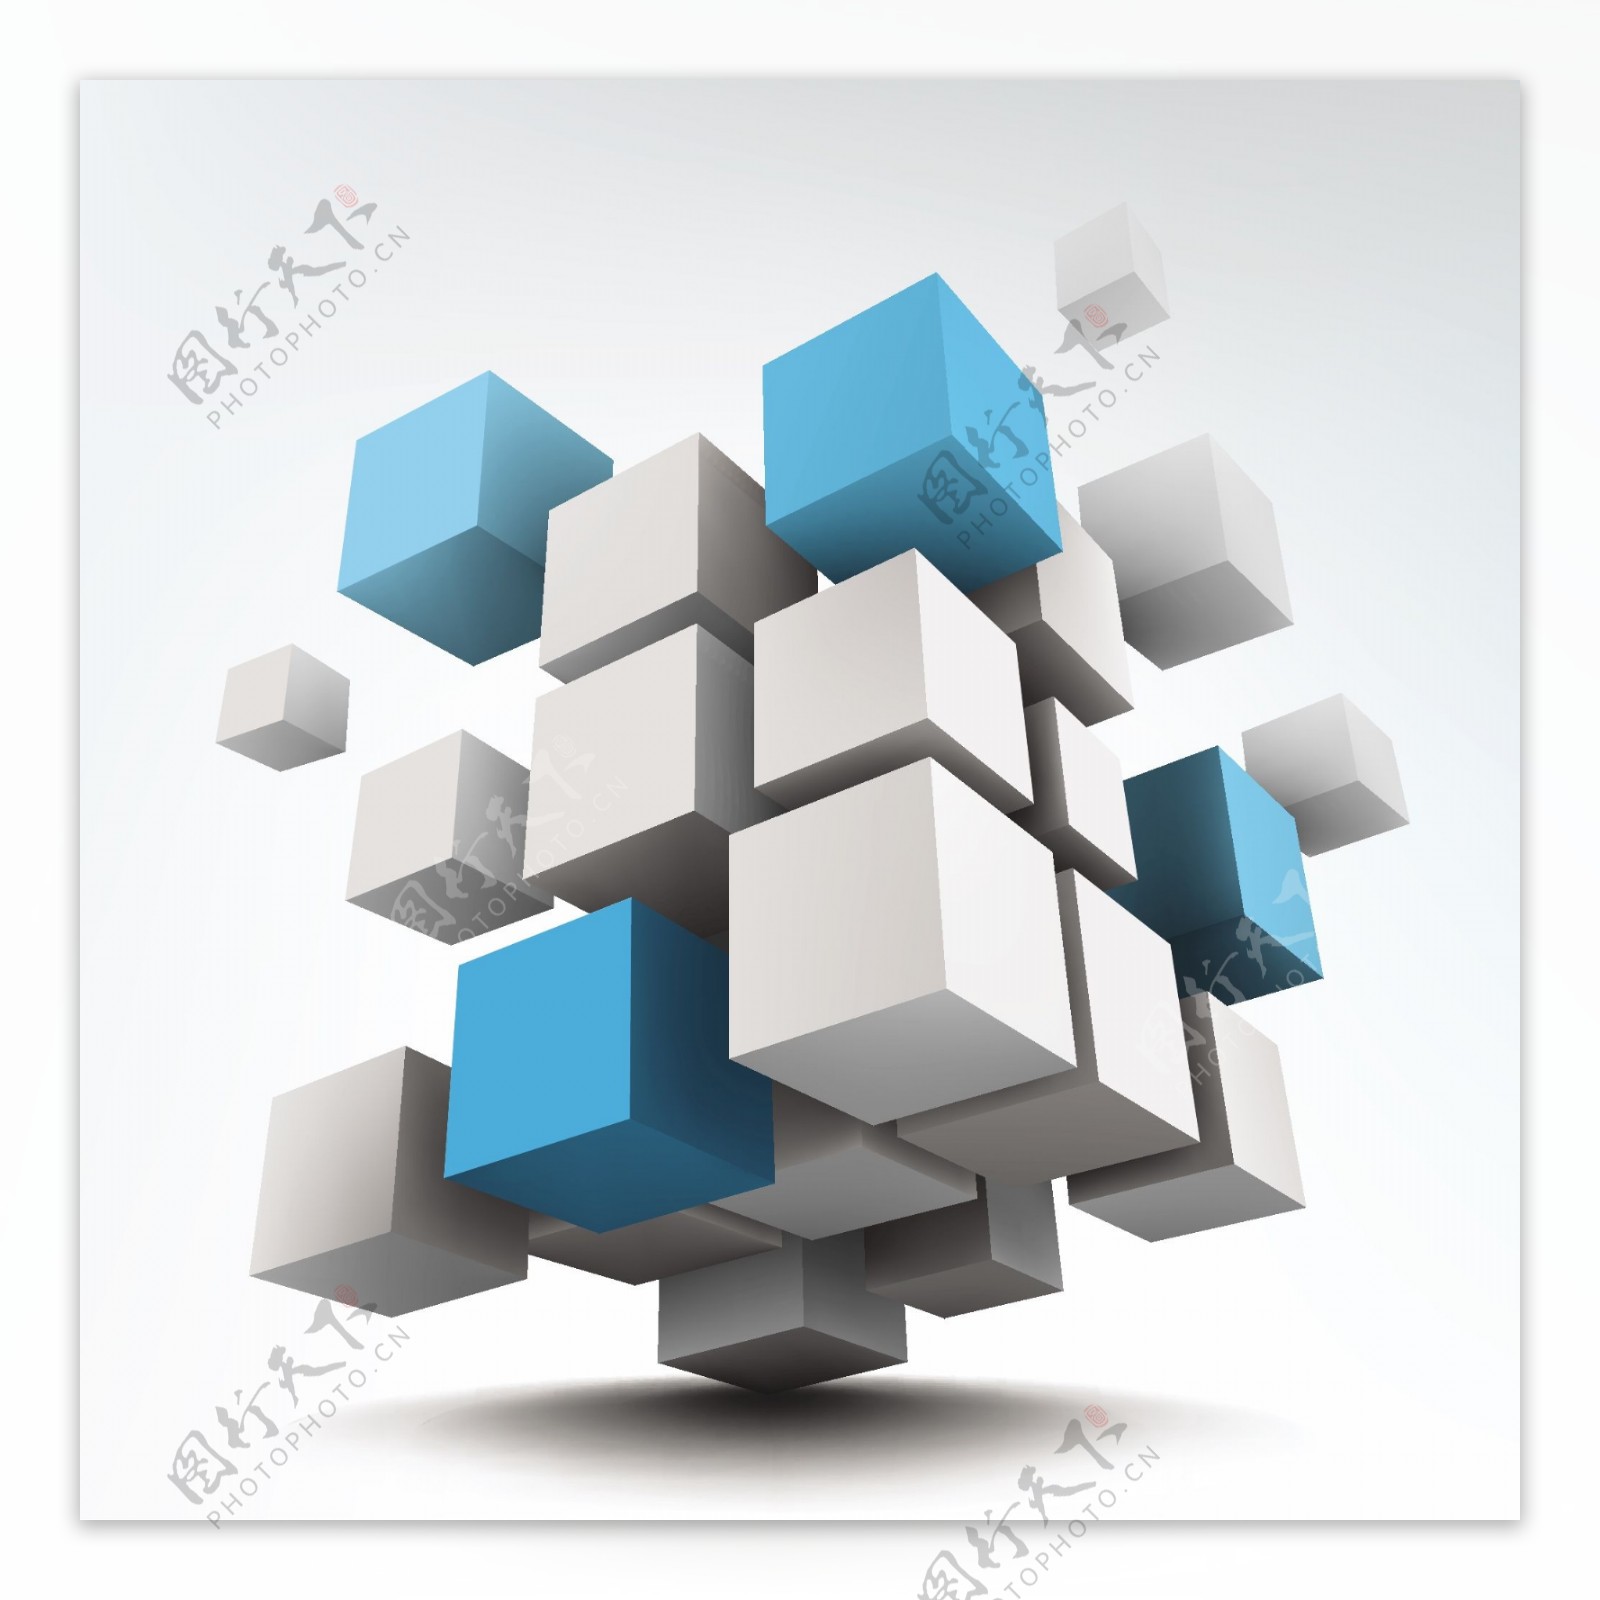 创意蓝白立体方块集合矢量素材